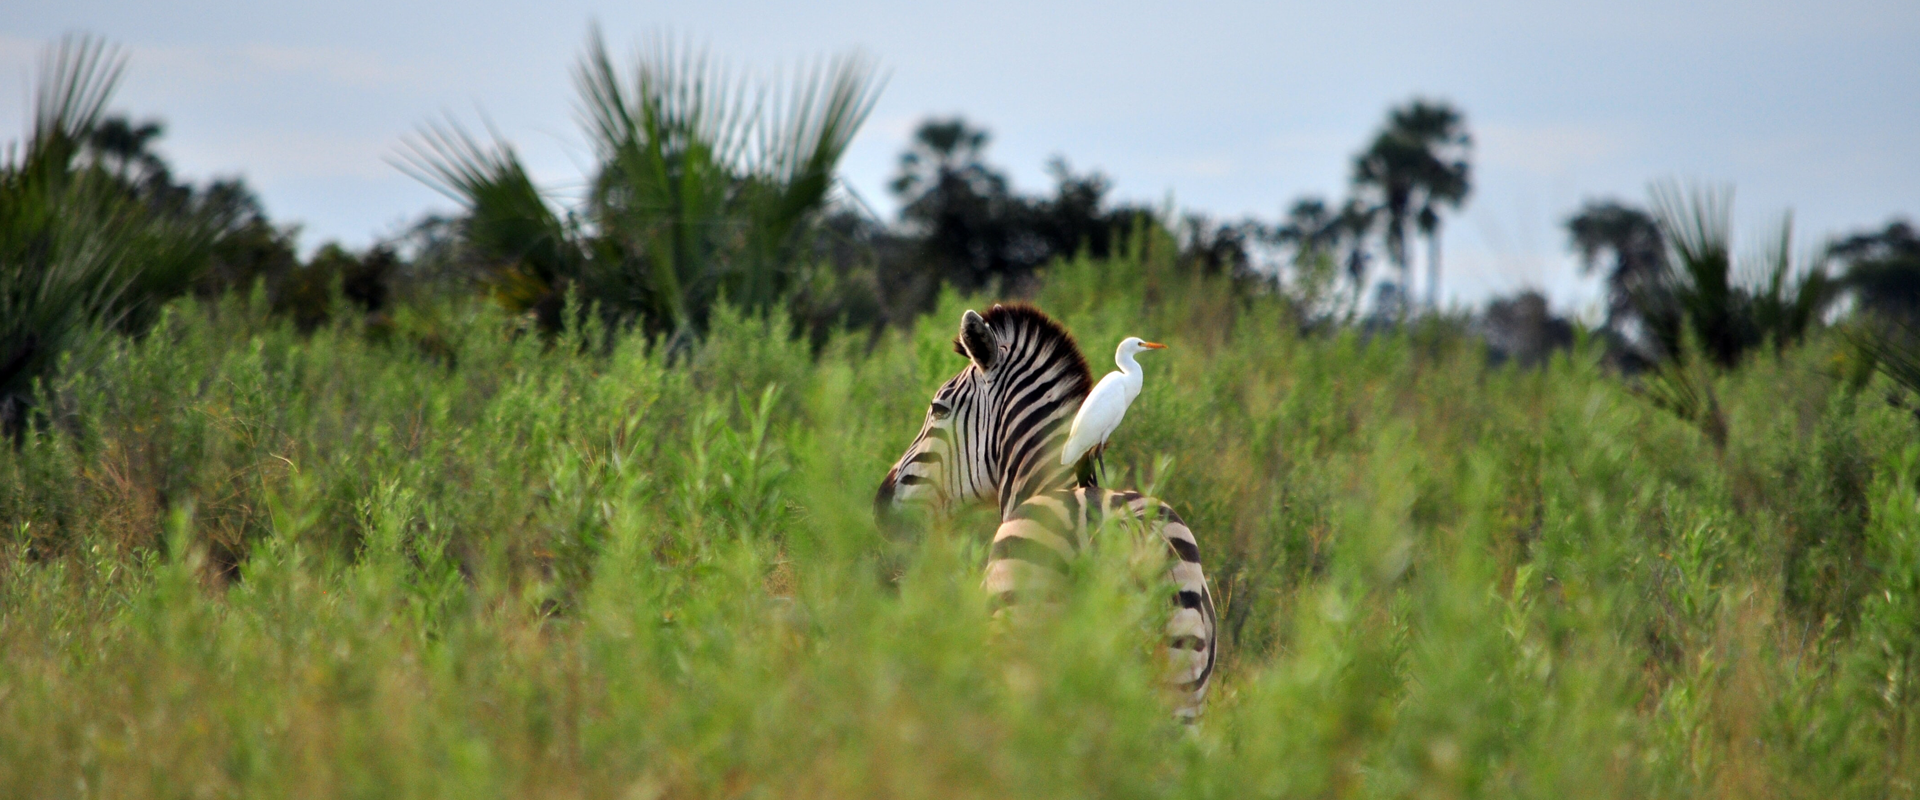 Safari okavango reserve moremi